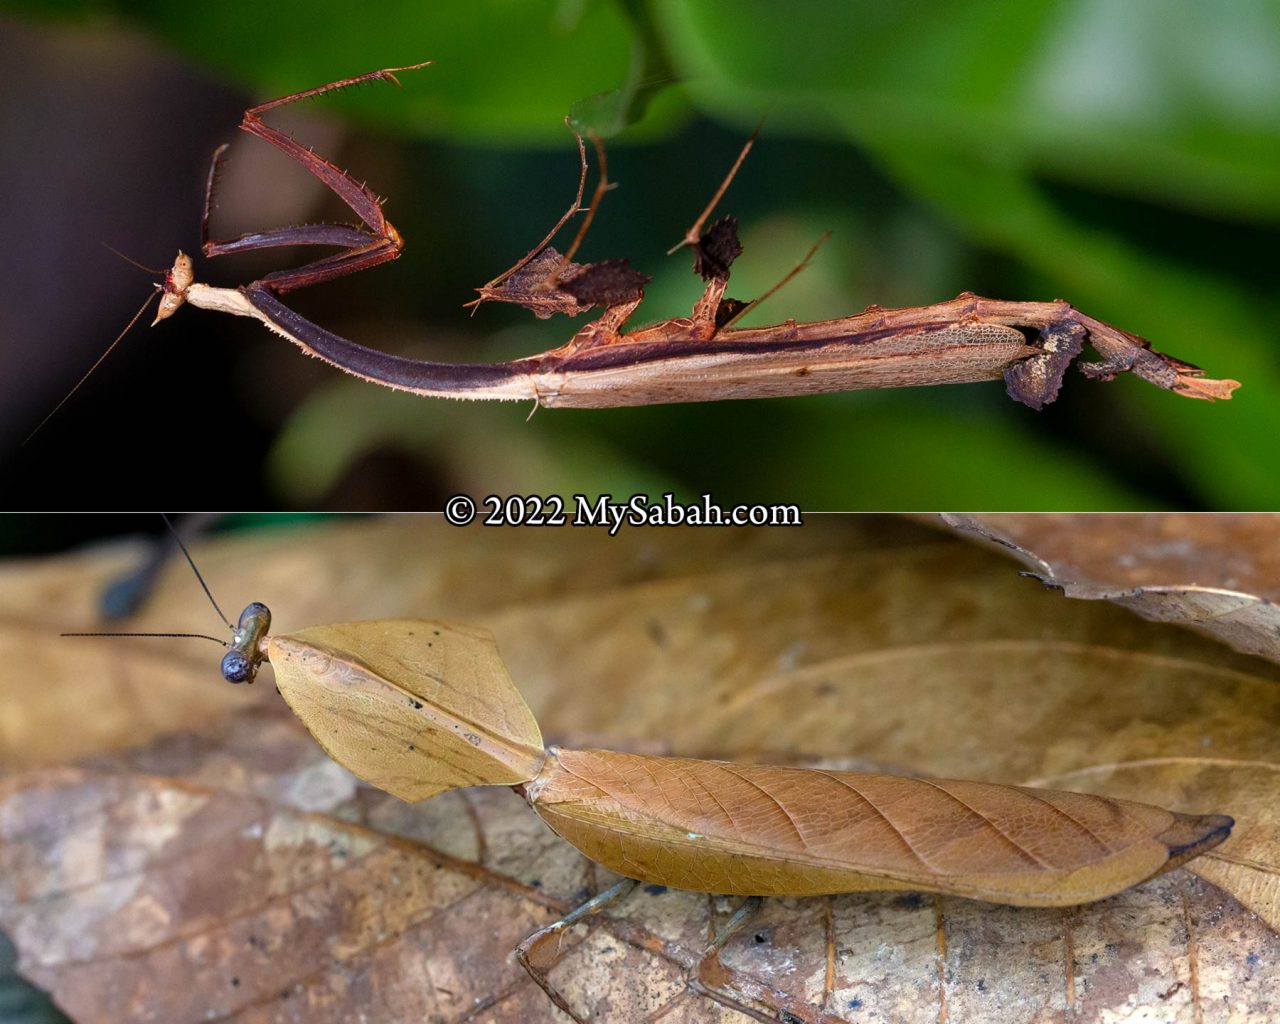 Toxodera hauseri and Deropatlys truncata praying mantis